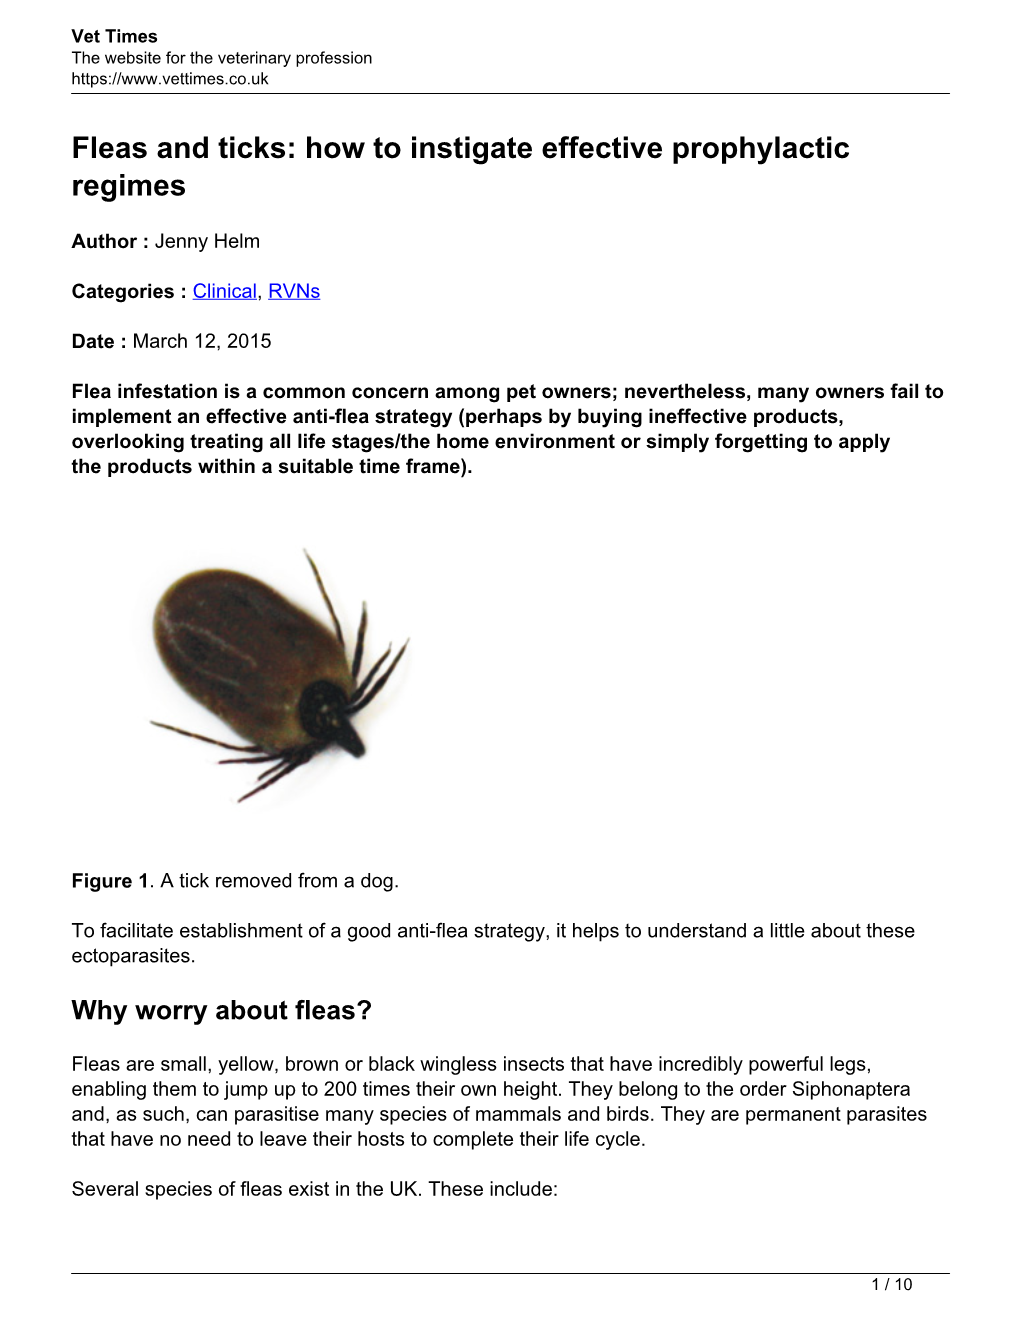 Fleas and Ticks: How to Instigate Effective Prophylactic Regimes